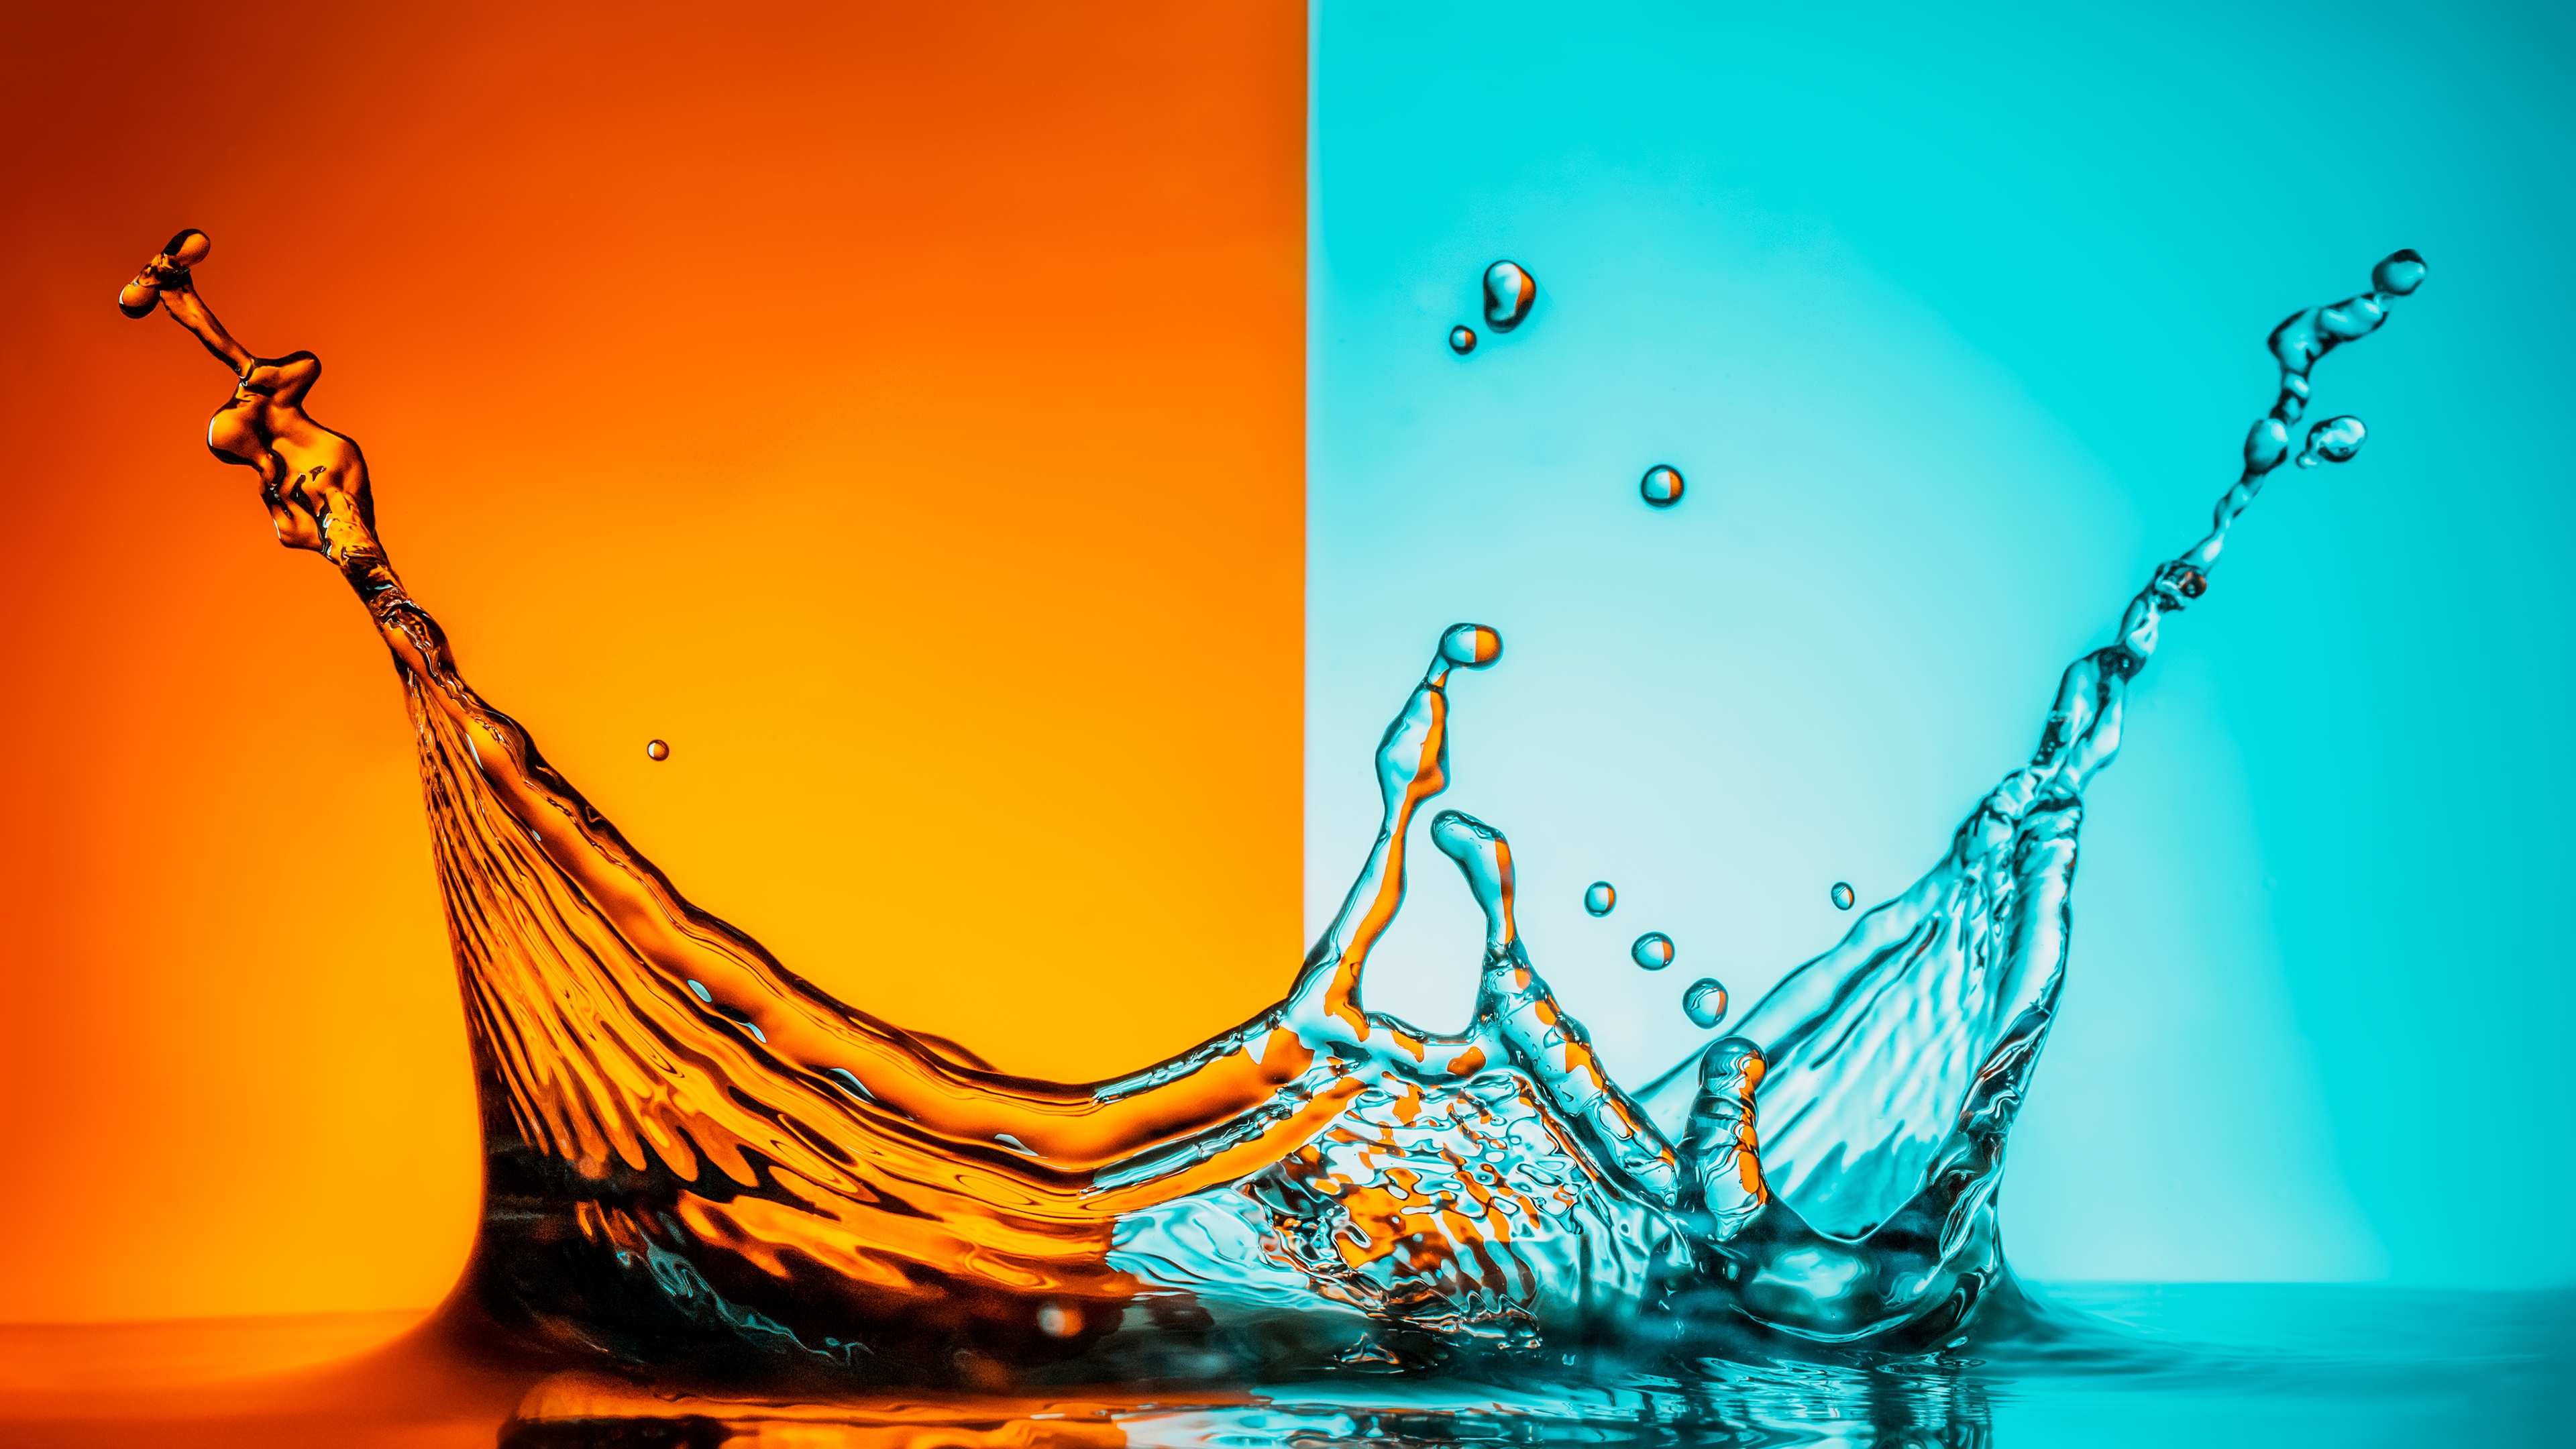 Những cơn nước bắn tung tóe với sắc cam bắt mắt tạo ra những chùm bọt nước đầy màu sắc và sự sống động. Xem ngay những hình ảnh về chúng để cảm nhận sức mạnh và động lực để đón những ngày mới tràn đầy năng lượng.